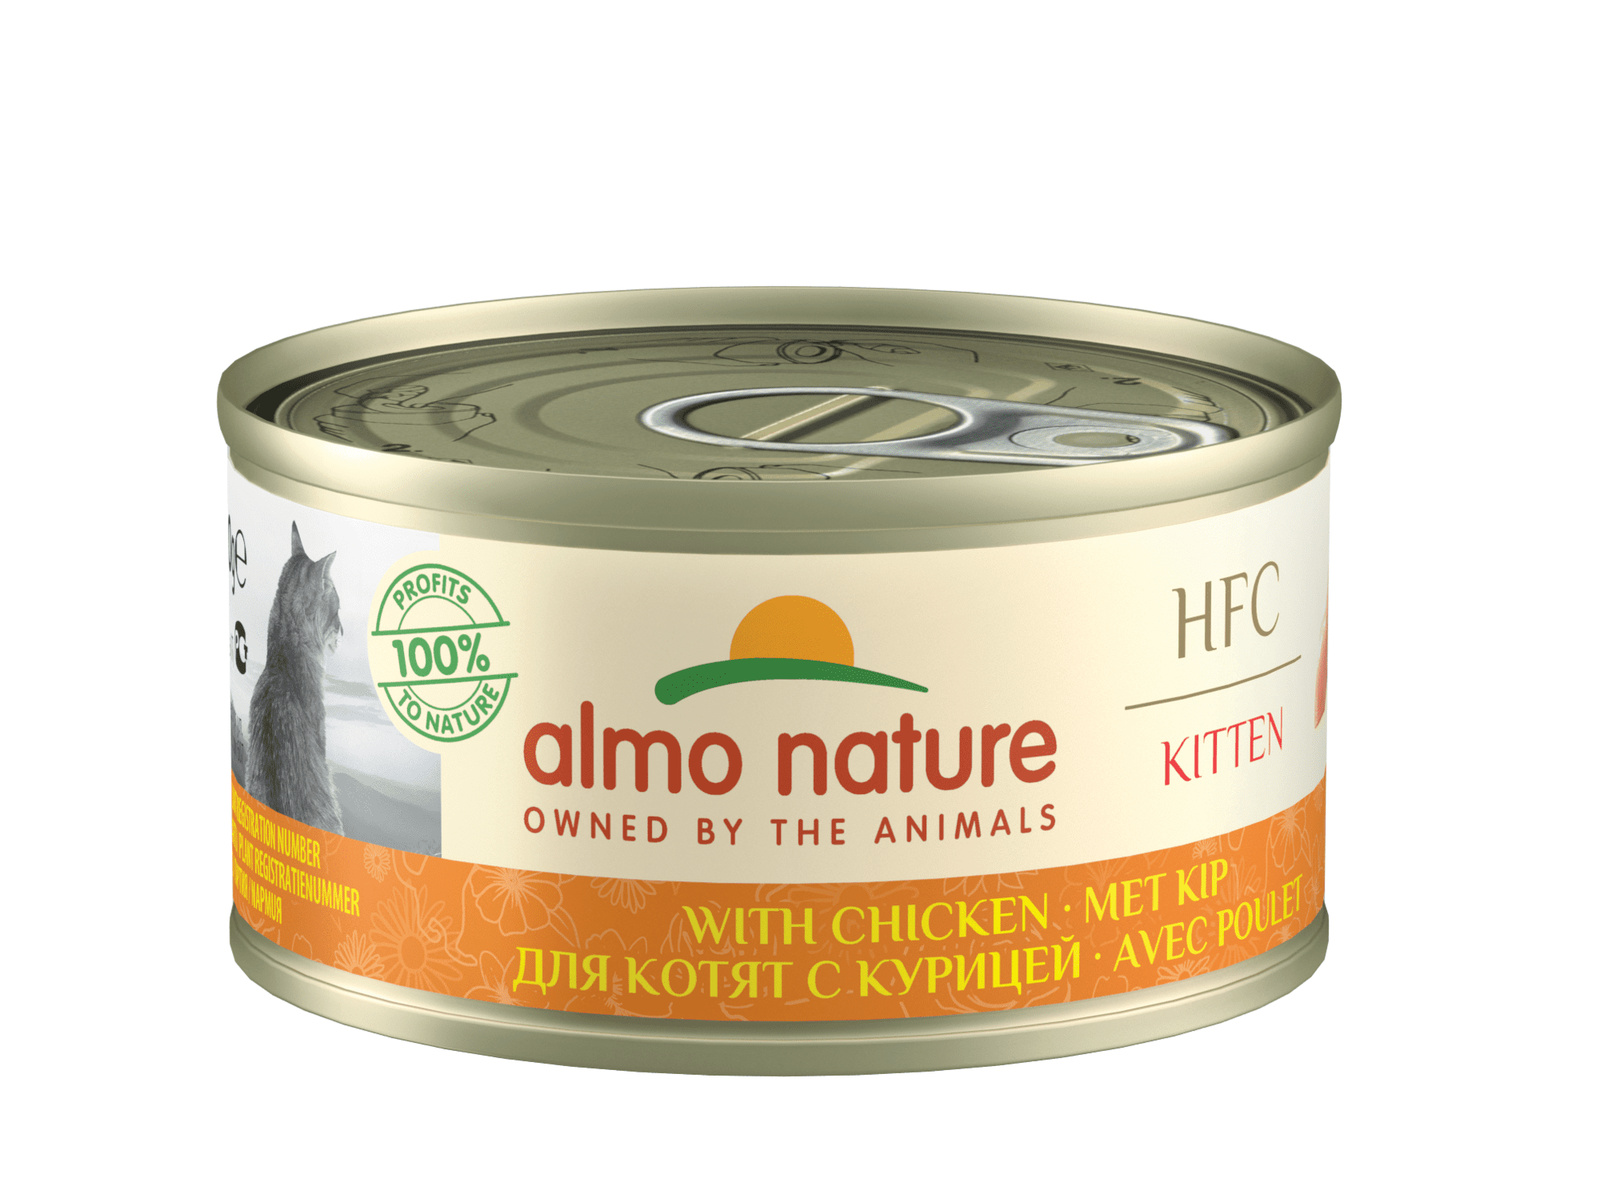 Almo Nature консервы Almo Nature консервы для котят, с курицей (70 г) almo nature консервы almo nature консервы низкокалорийные для кошек с курицей и киноа 70 г